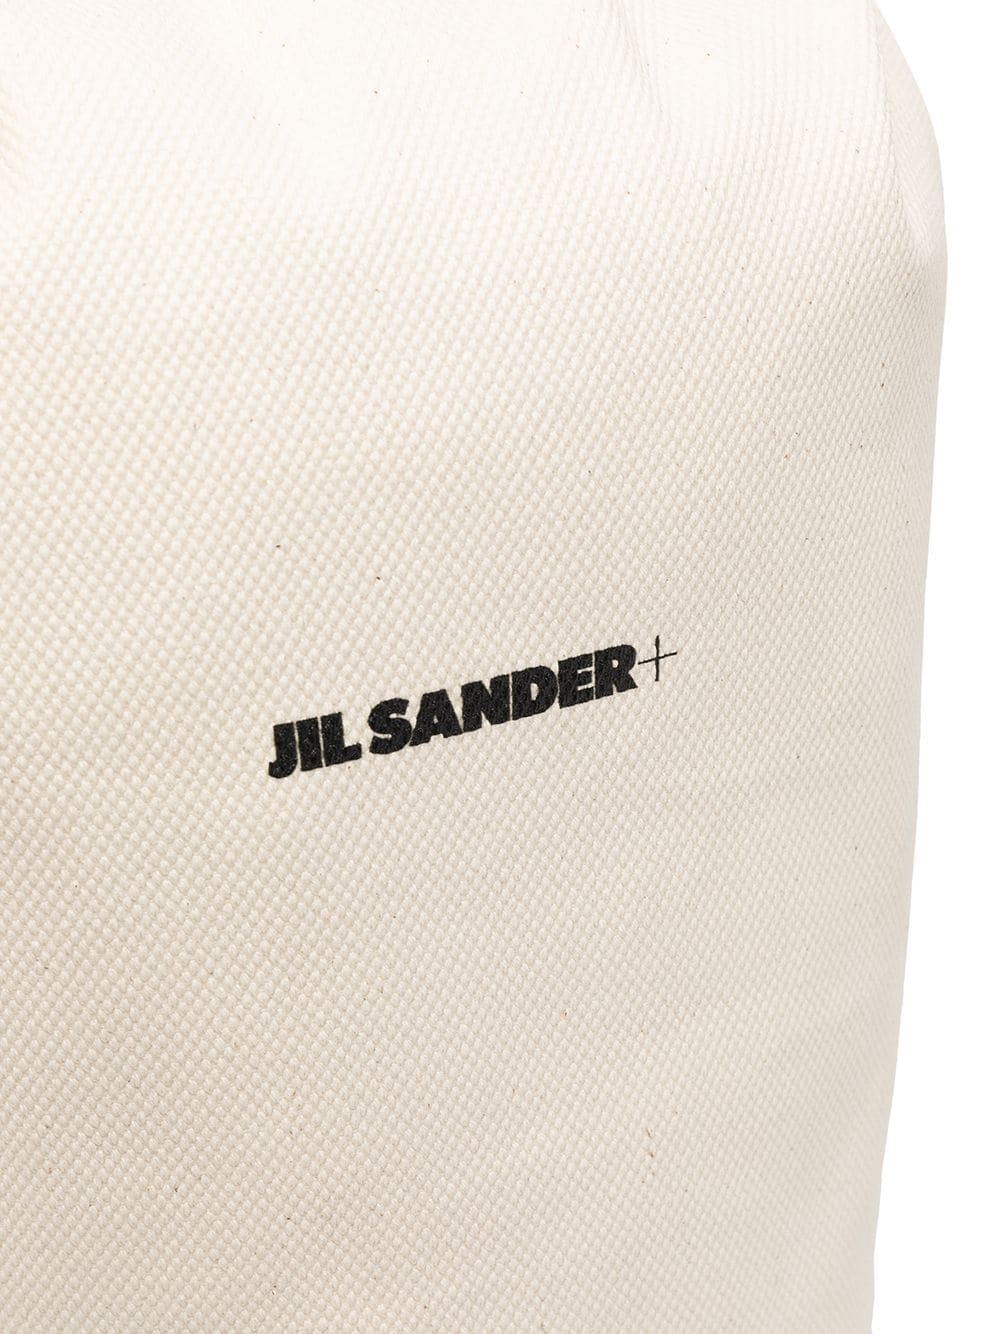 фото Jil sander рюкзак с откидным клапаном и логотипом